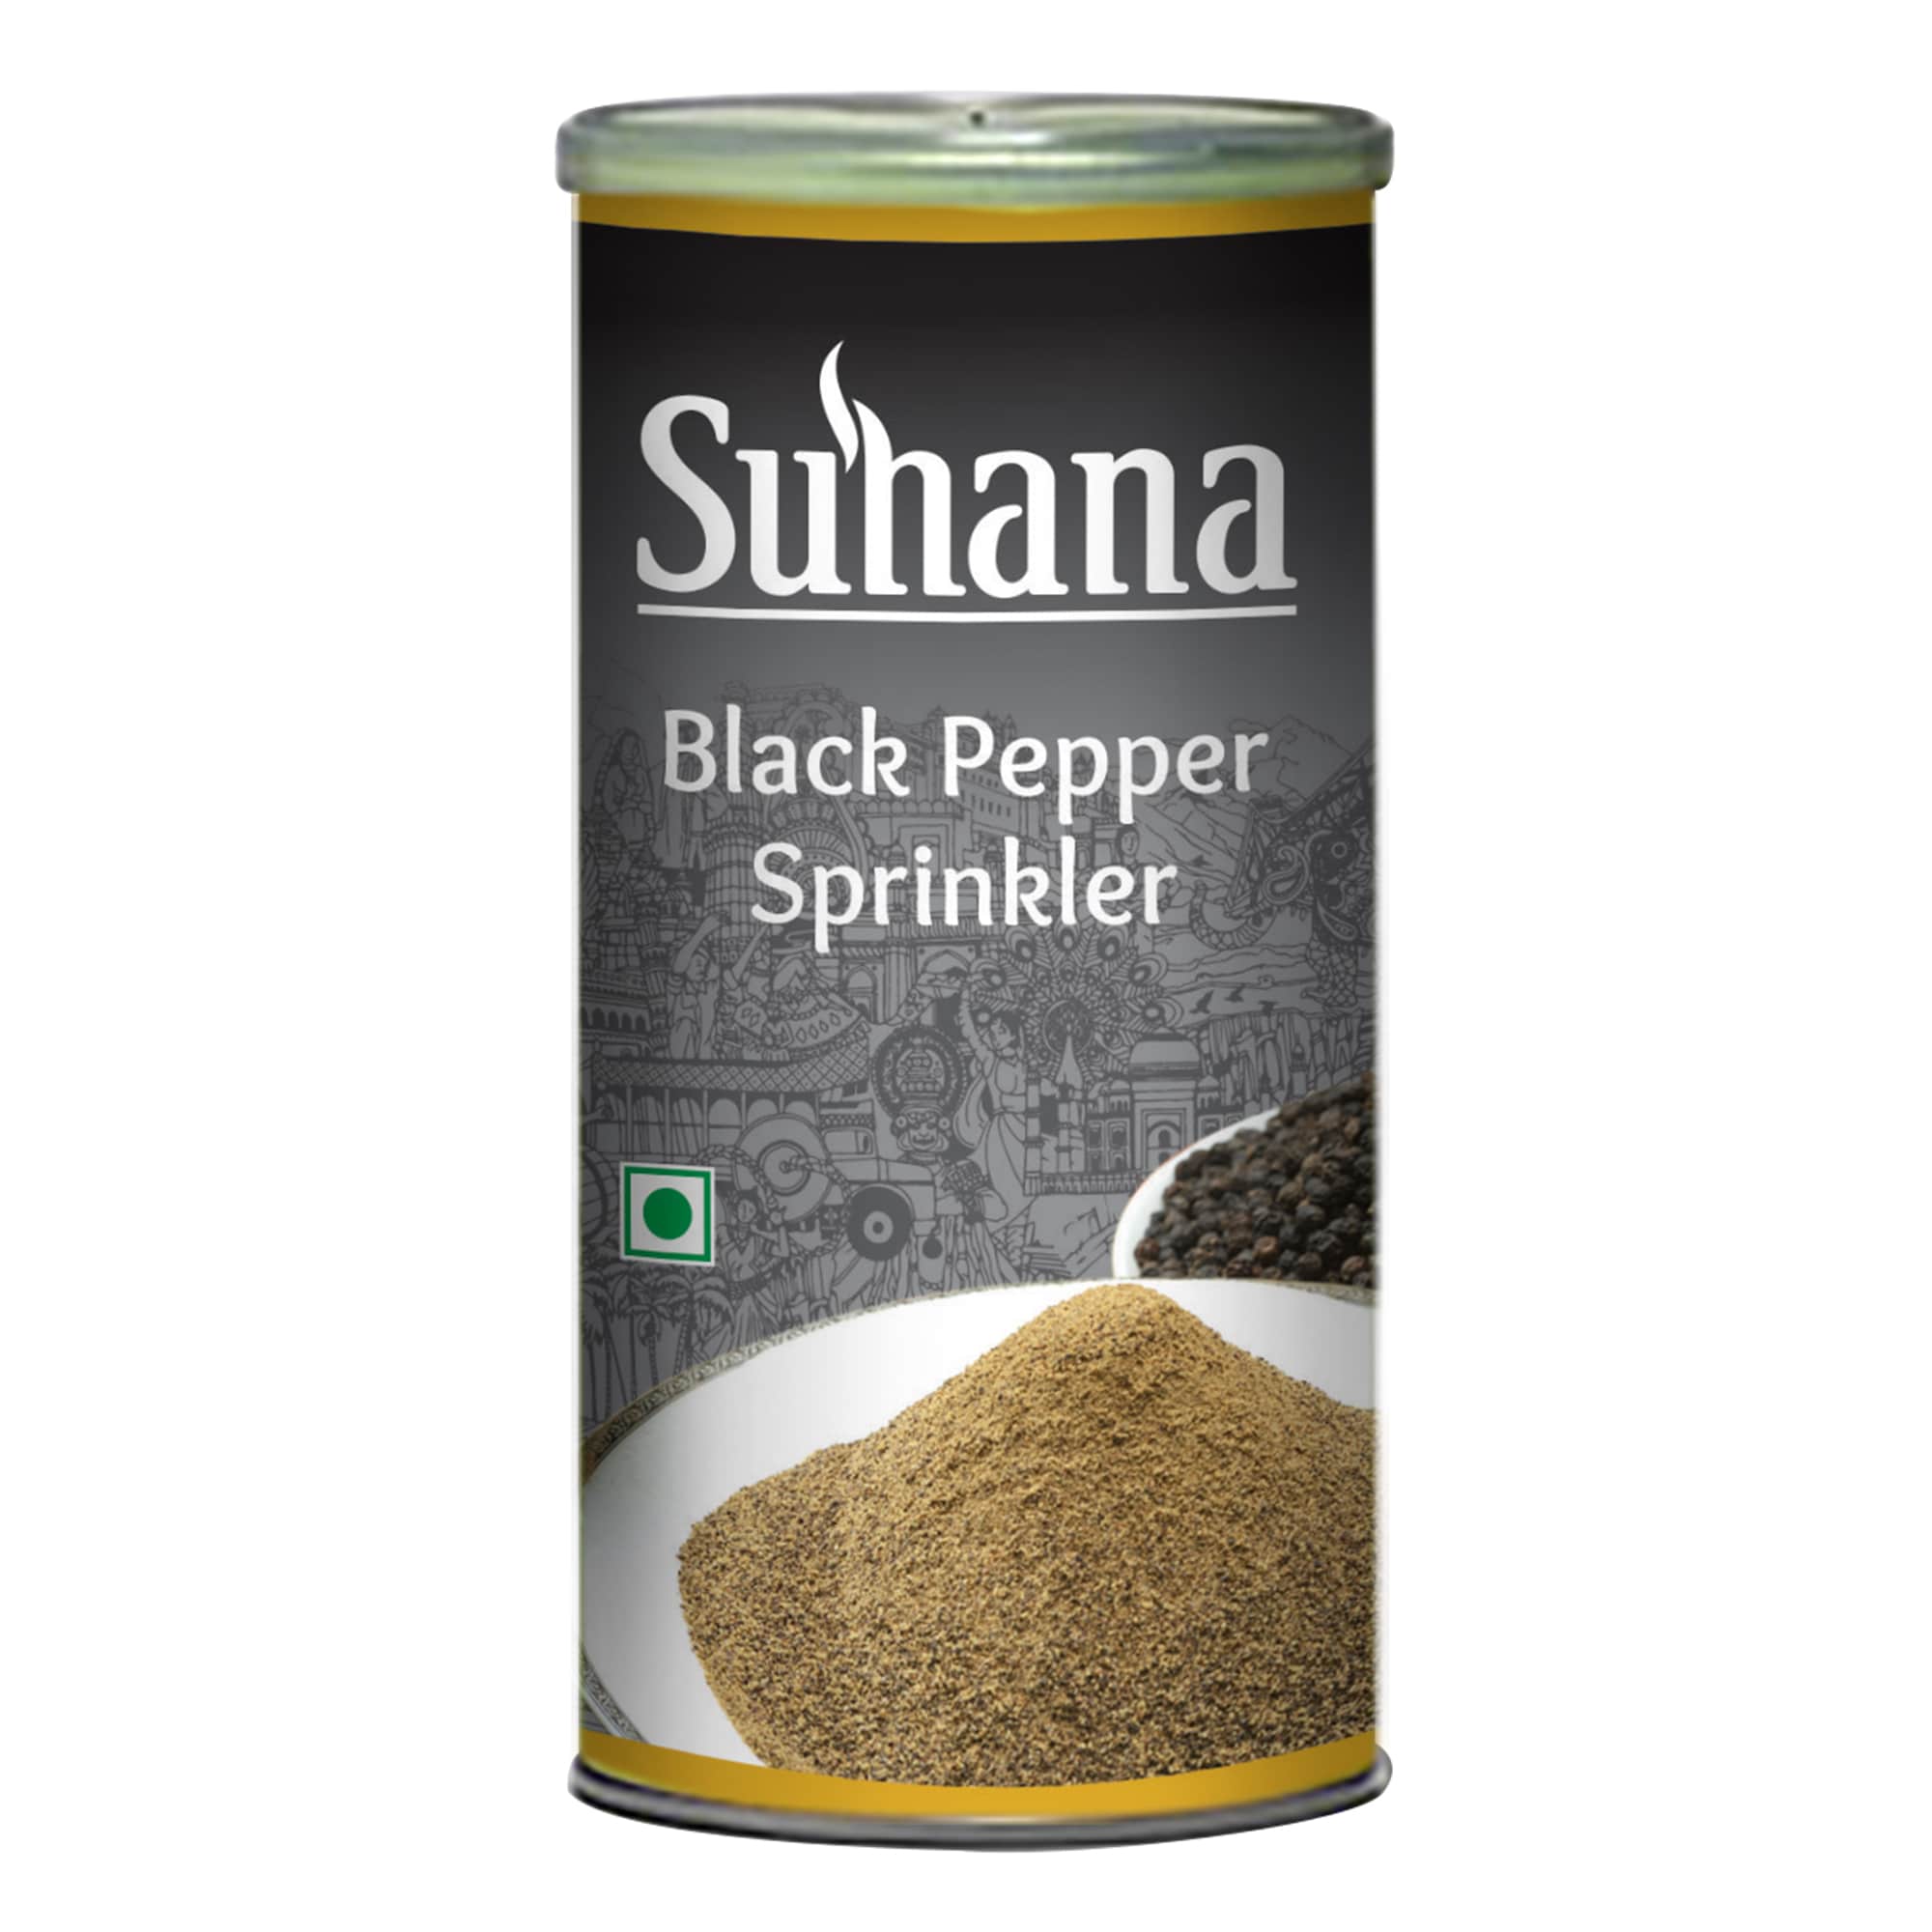 Suhana Black Pepper Sprinkler